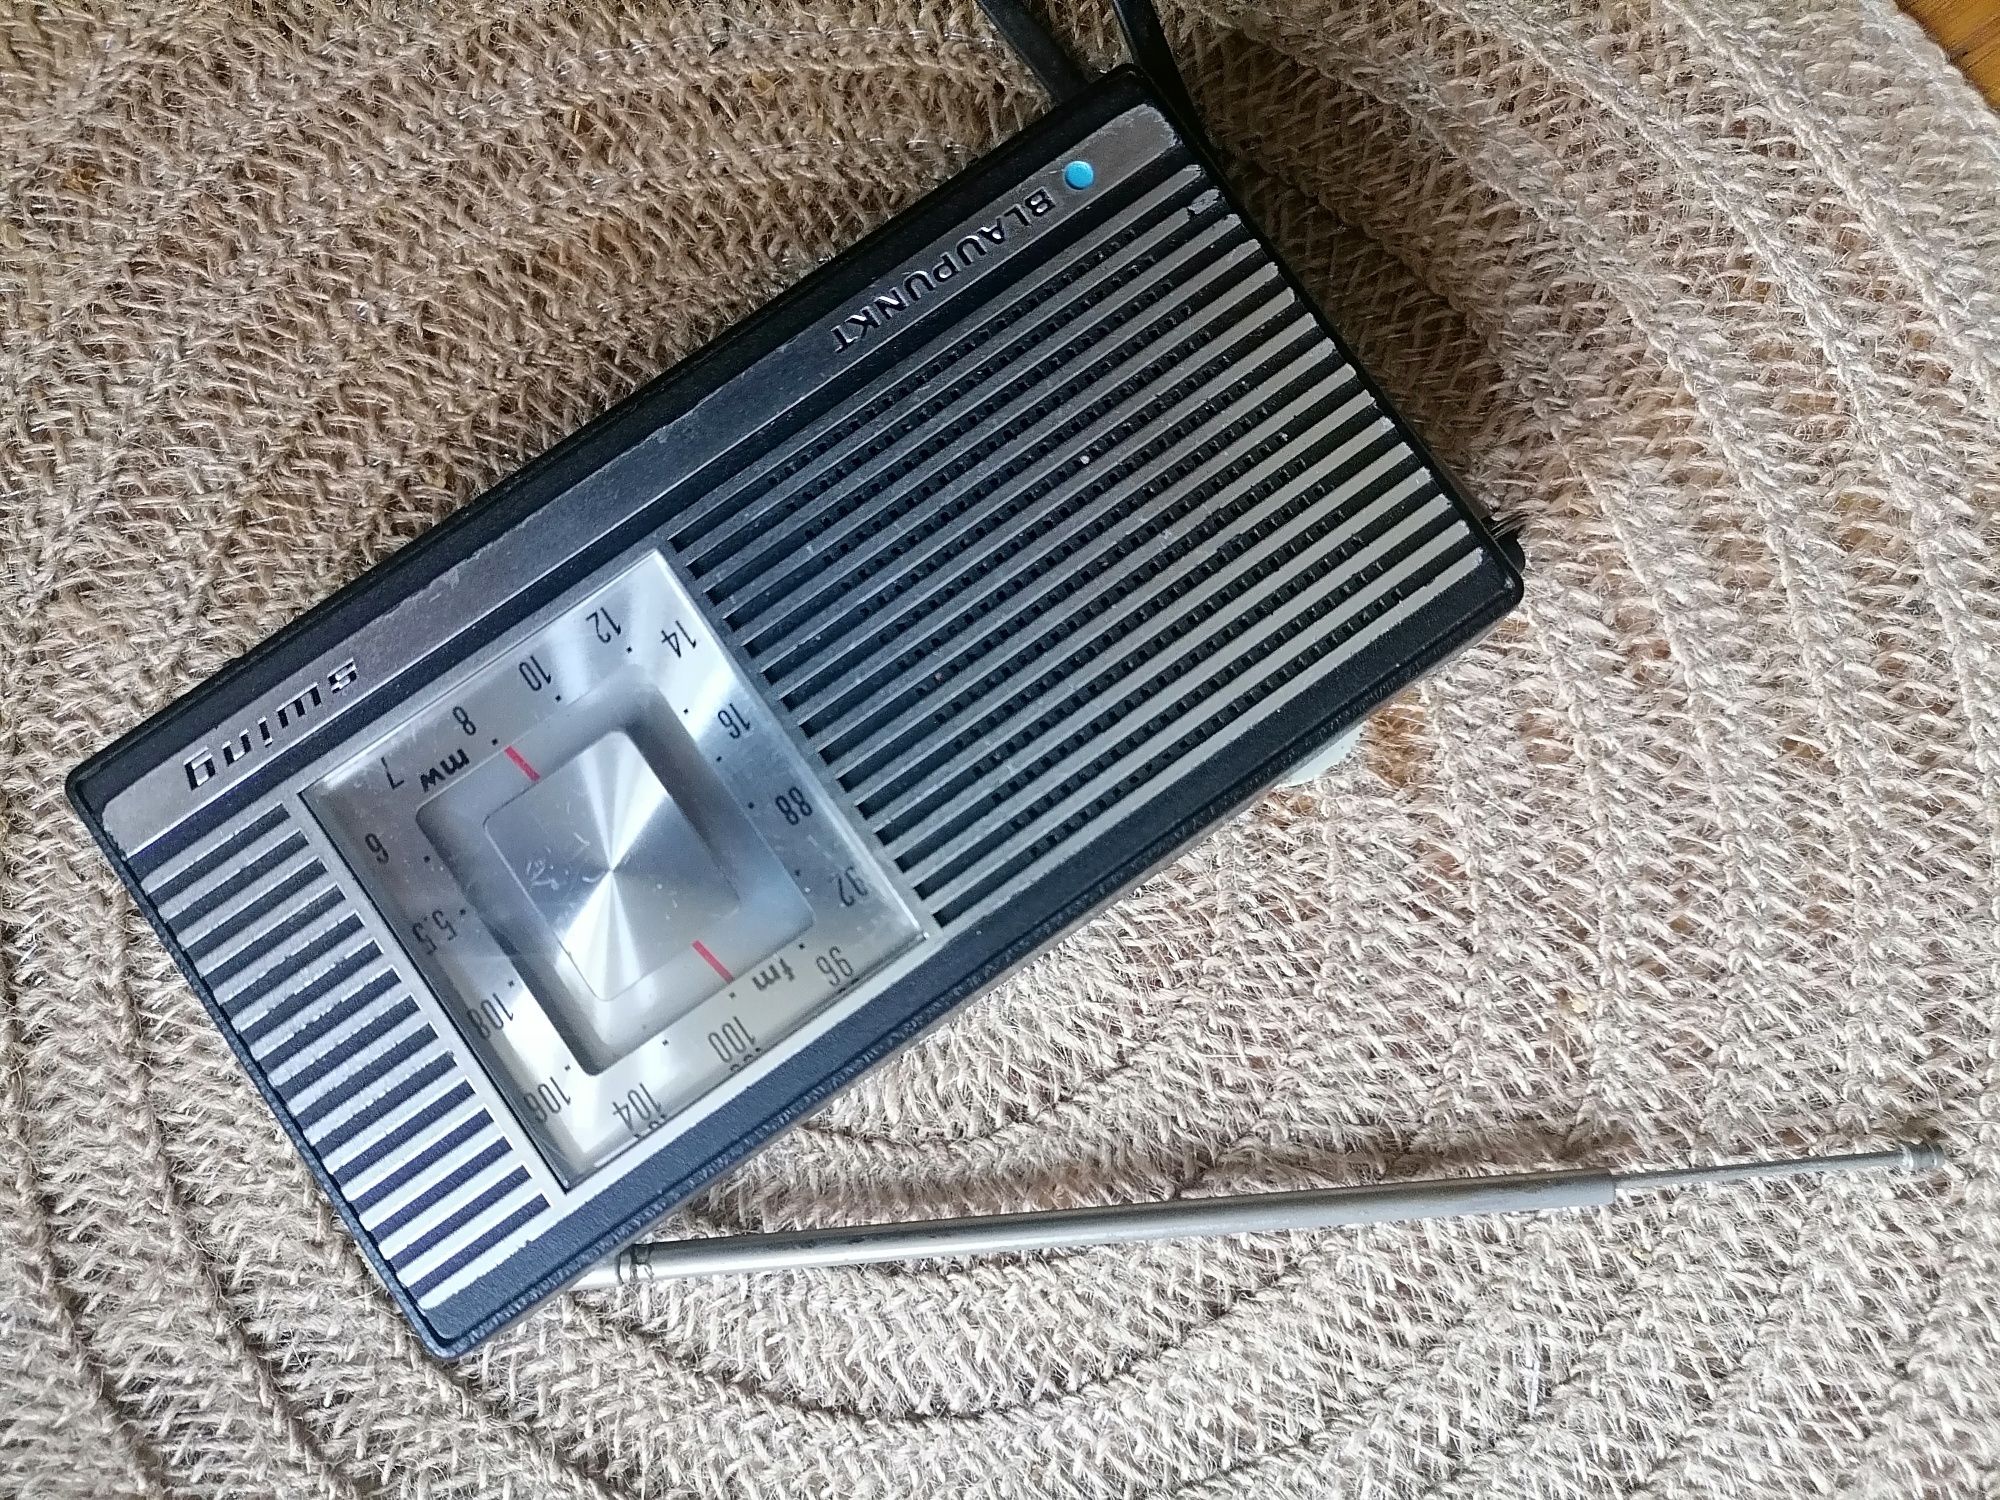 Stare radio tranzystorowe z lat 60 tych Sprawne